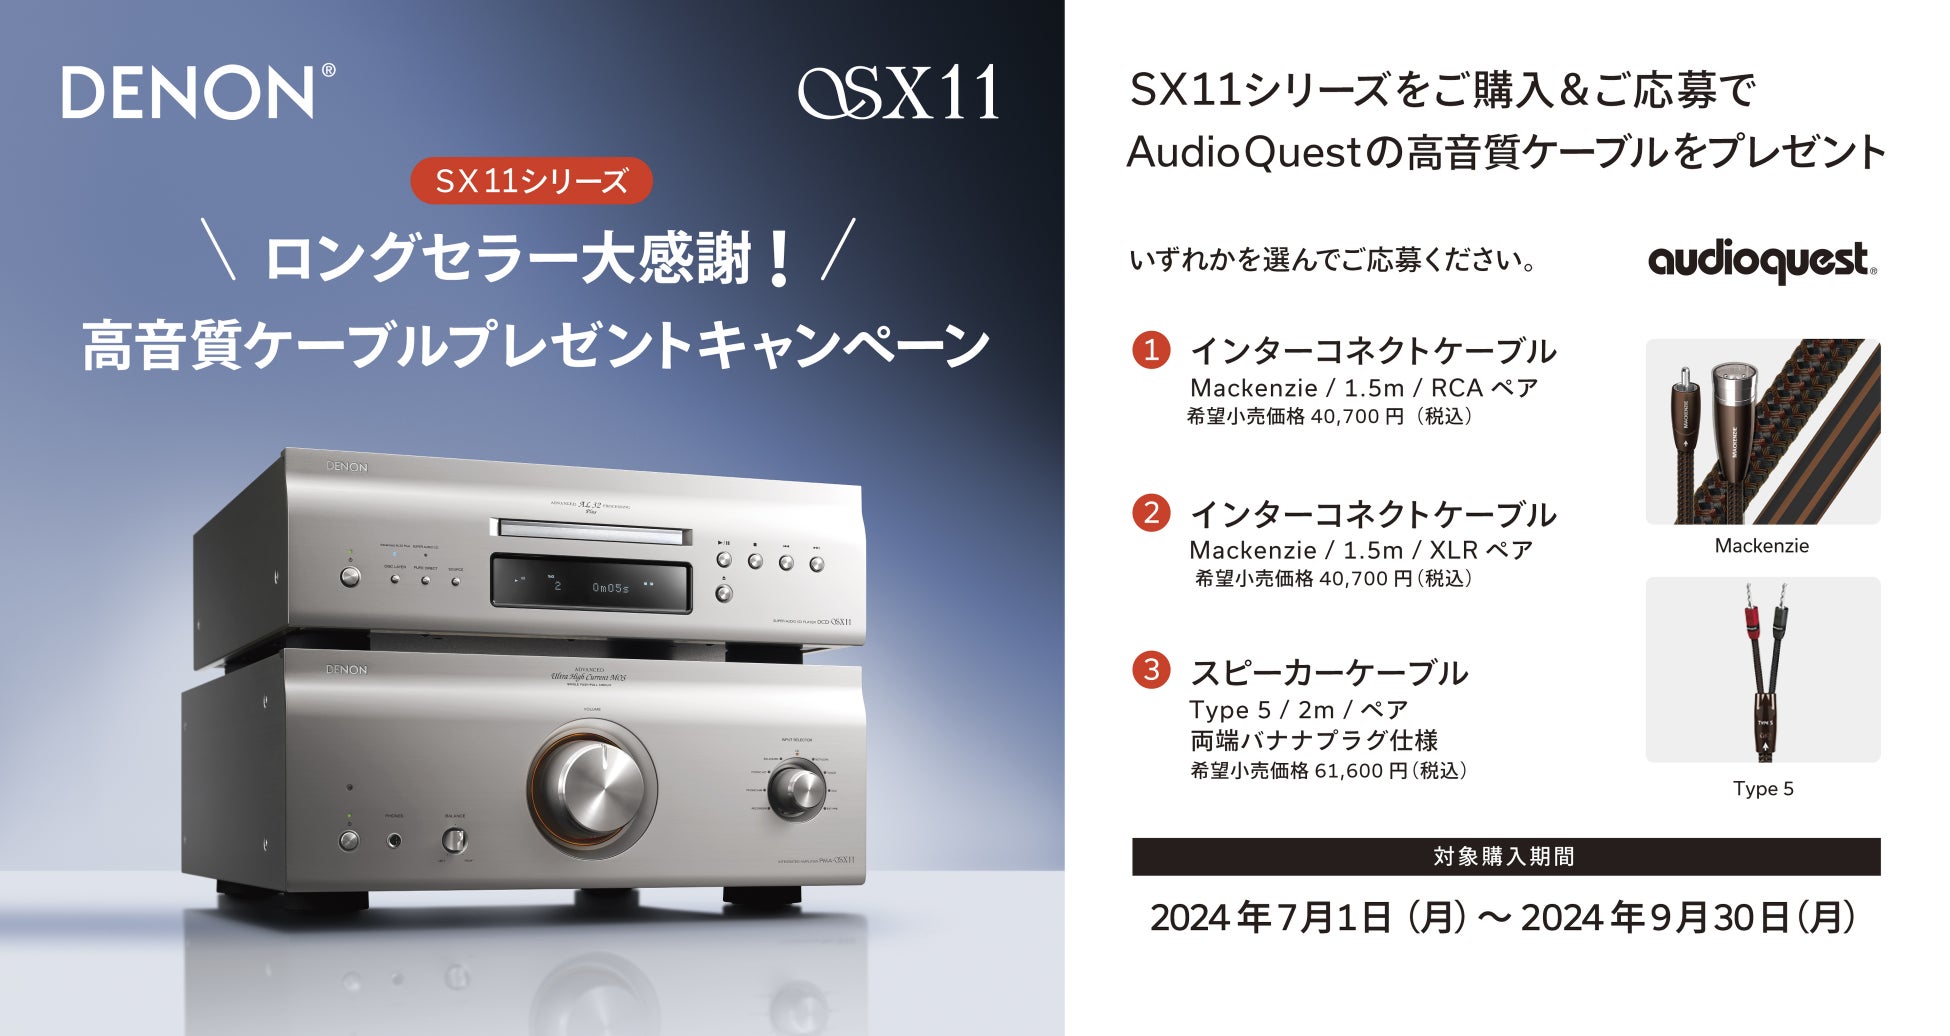 [Denon キャンペーン情報]「SX11シリーズ ロングセラー大感謝！高音質ケーブルプレゼントキャンペーン」実施のお知らせ